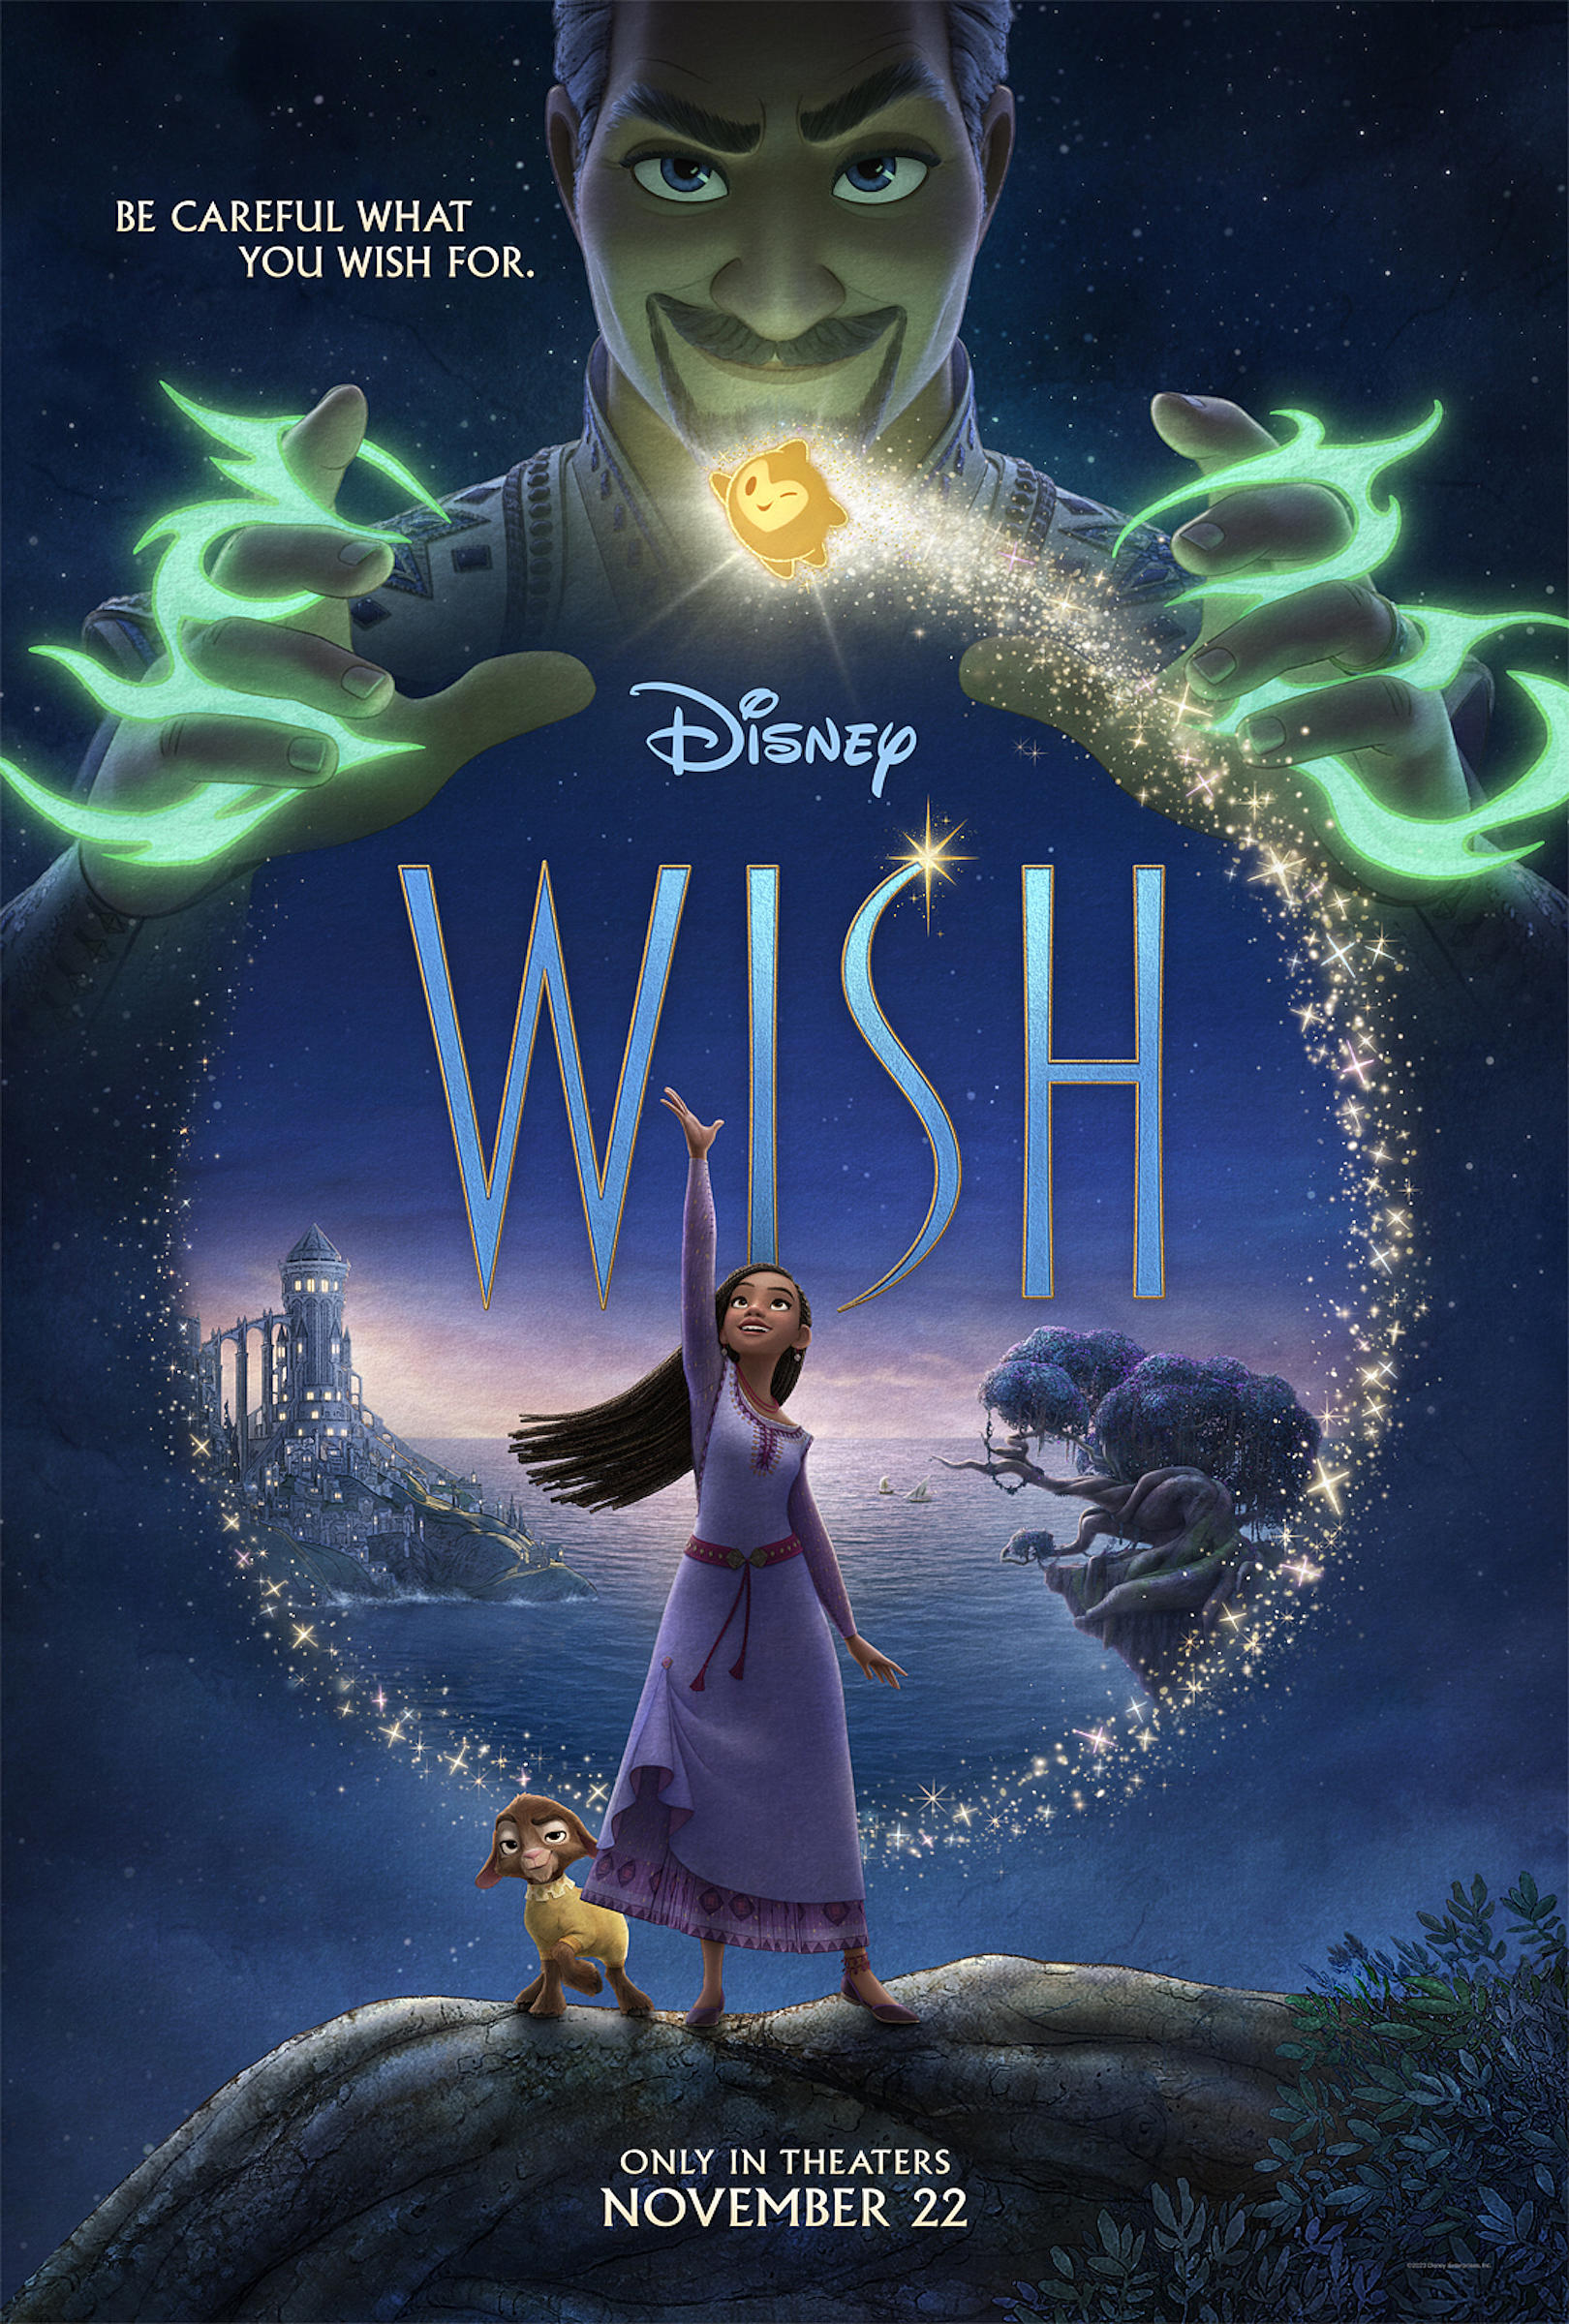 Wish é o próximo filme da Disney, inspirado em Frozen